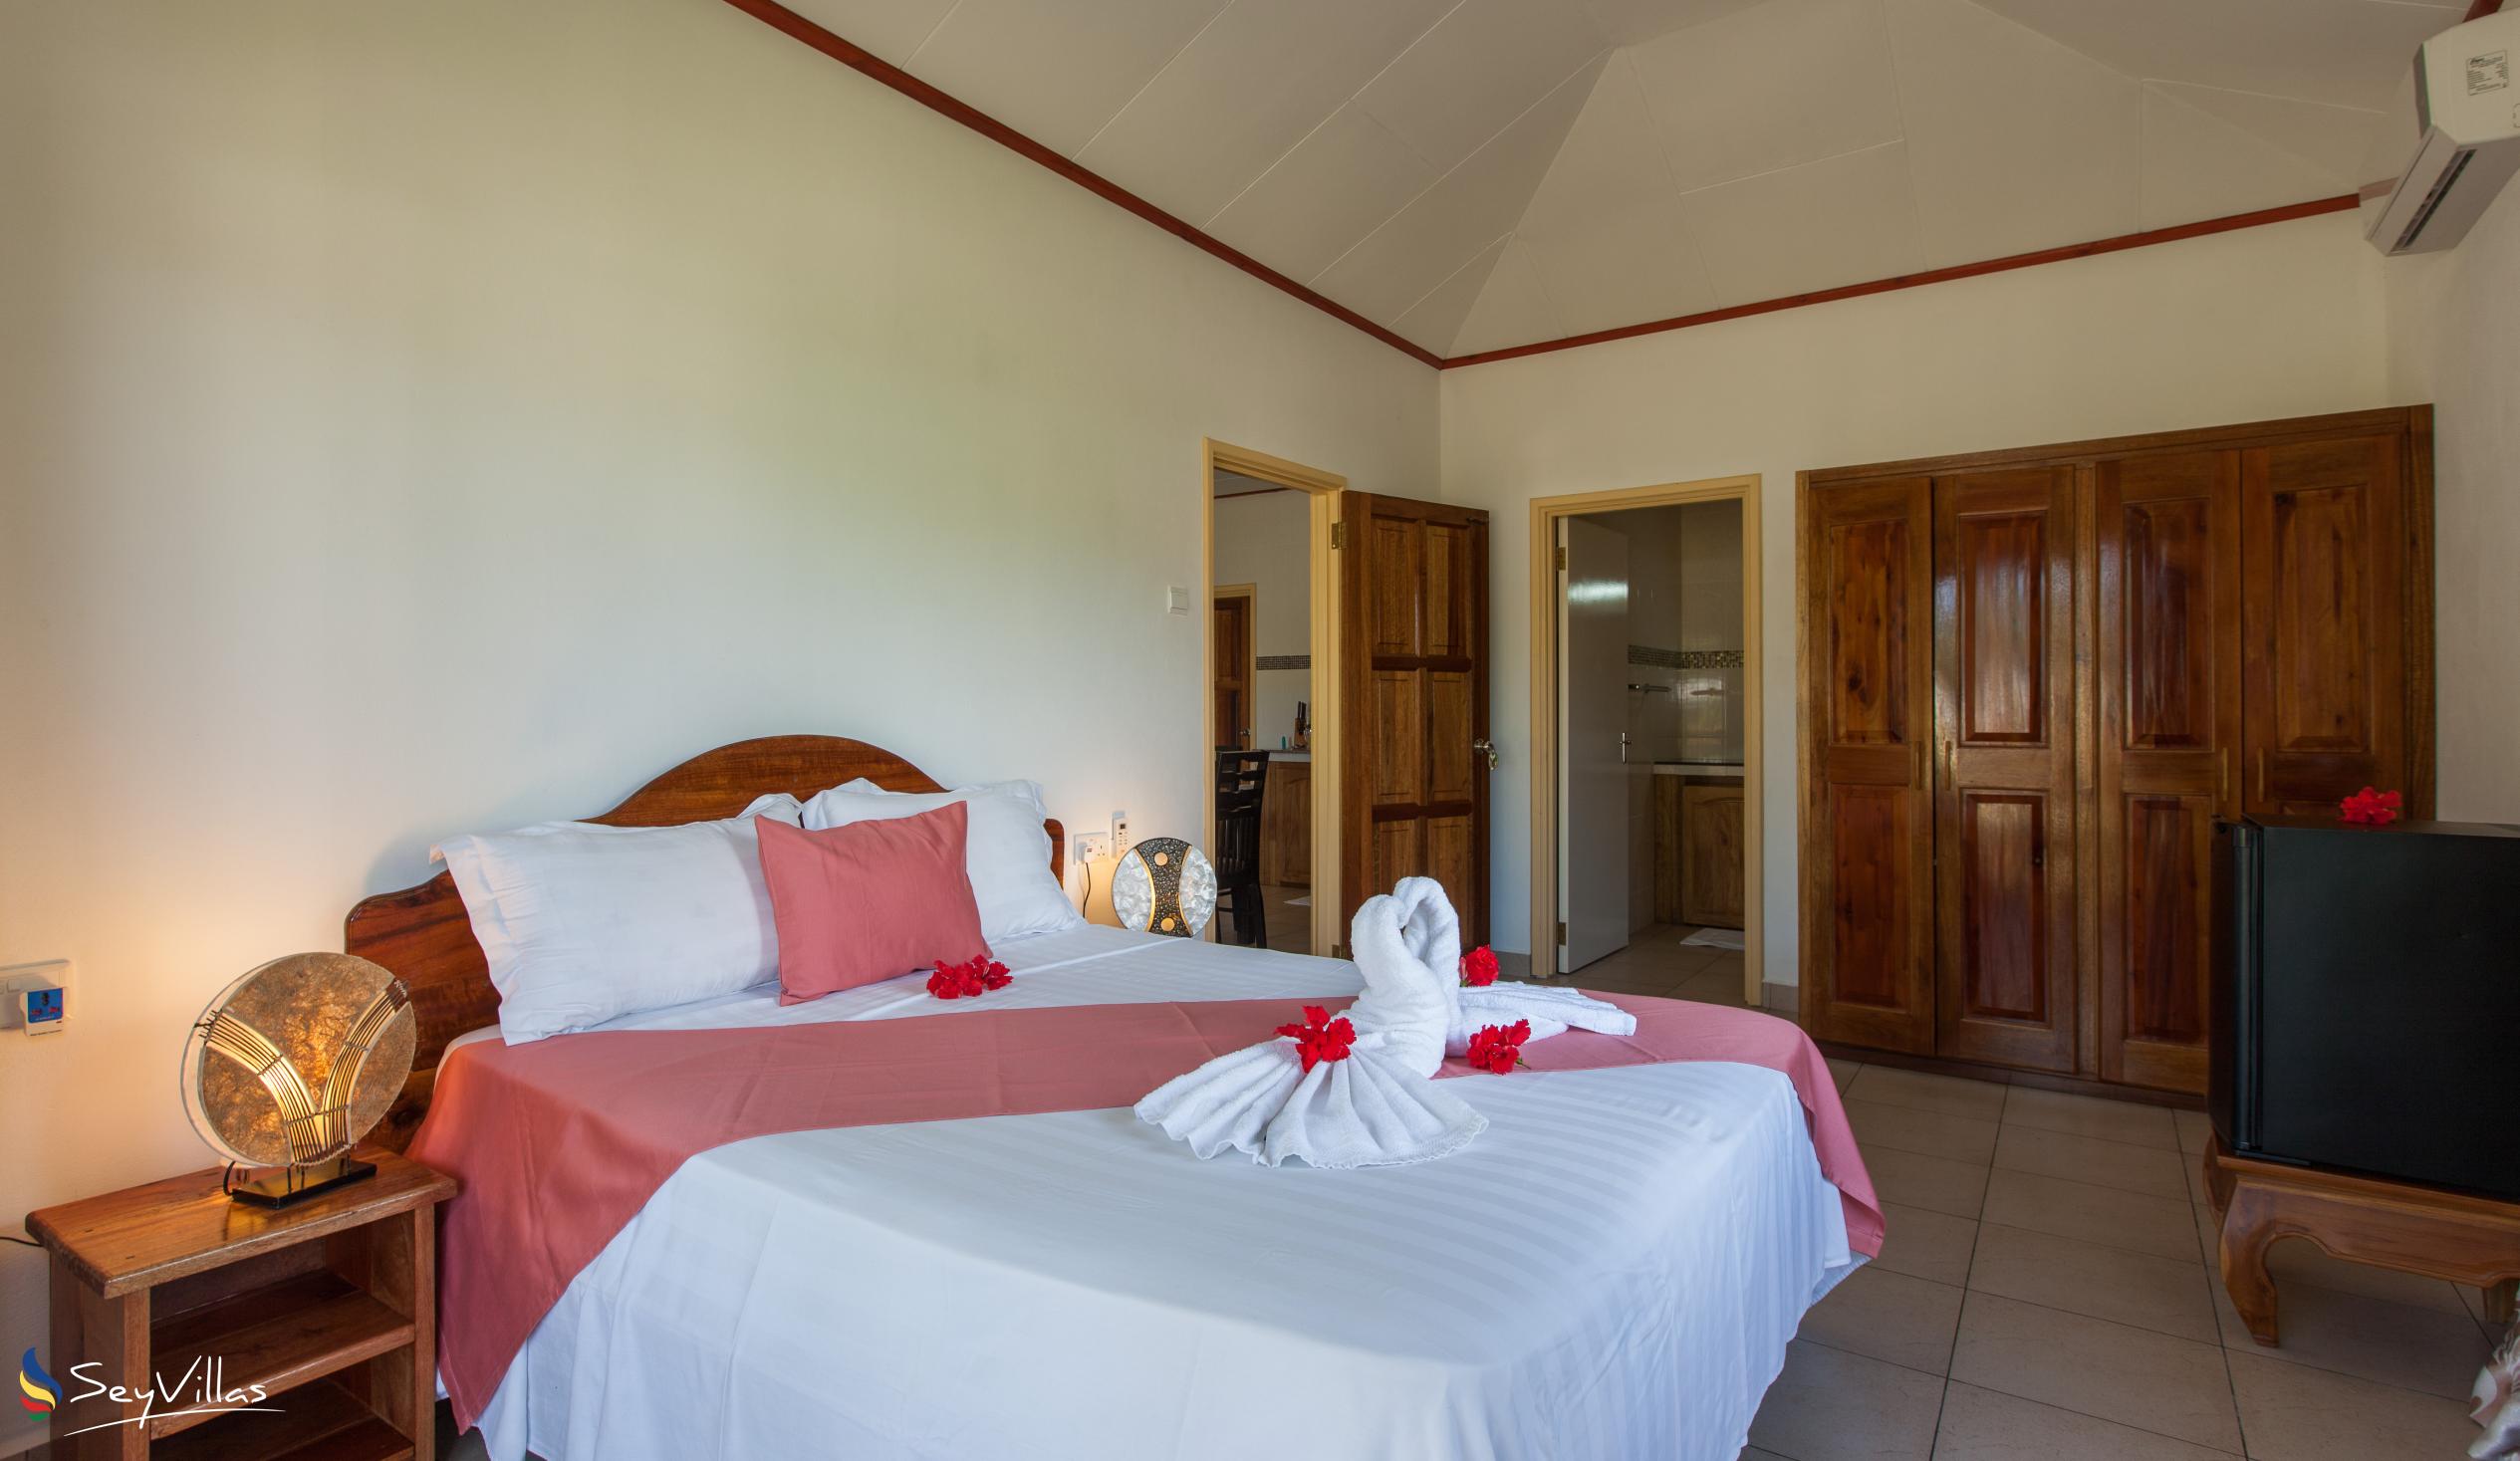 Foto 62: Hostellerie La Digue - Bungalow con 2 camere da letto - La Digue (Seychelles)